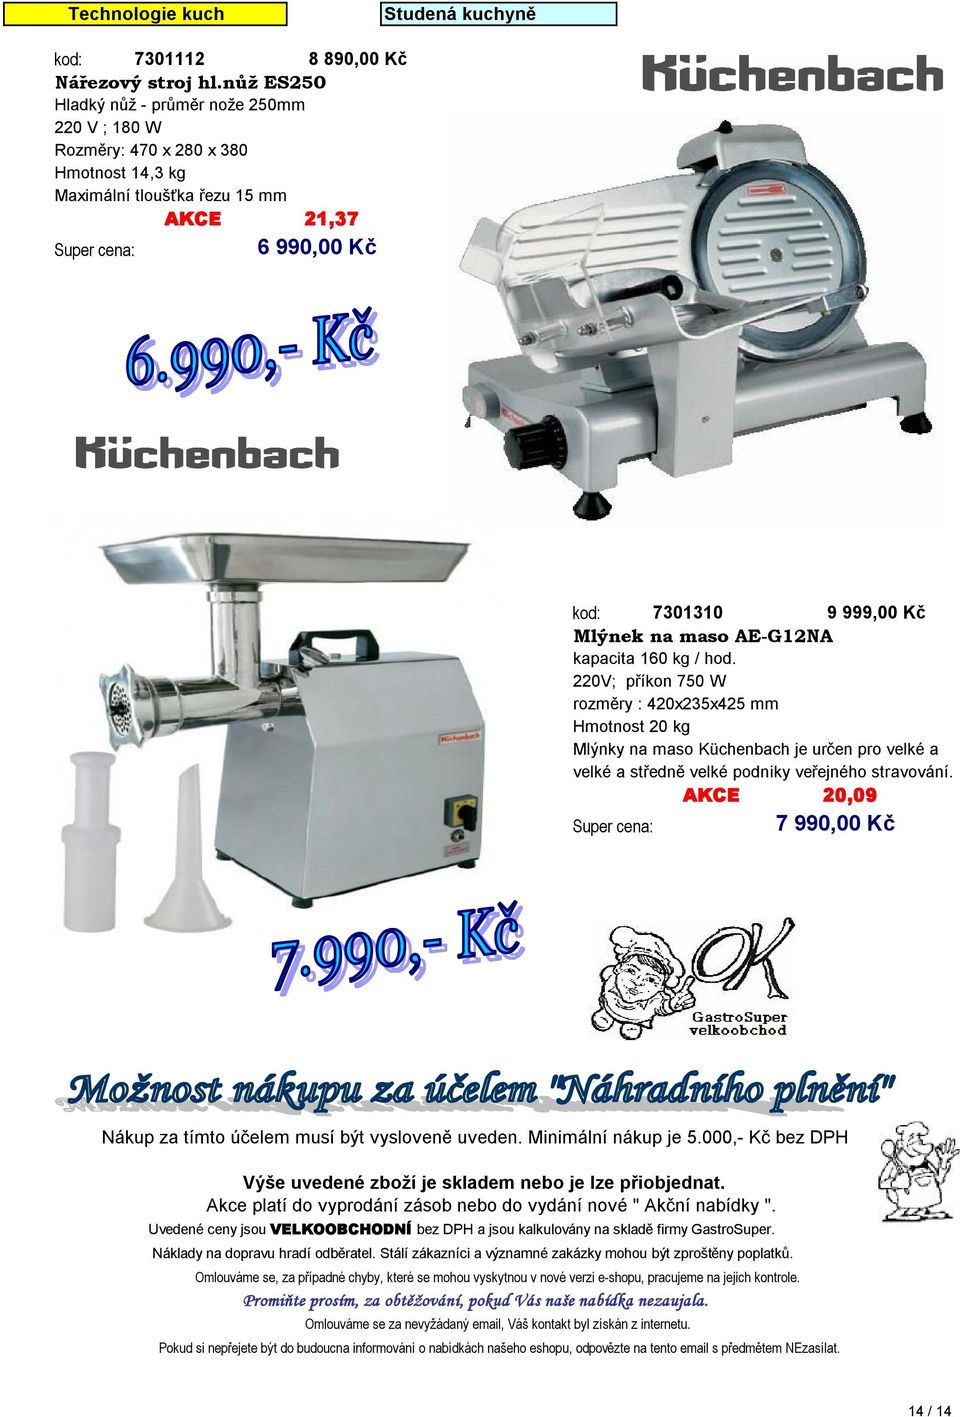 kapacita 160 kg / hod. 220V; příkon 750 W rozměry : 420х235х425 mm Hmotnost 20 kg Mlýnky na maso Küchenbach je určen pro velké a velké a středně velké podniky veřejného stravování.